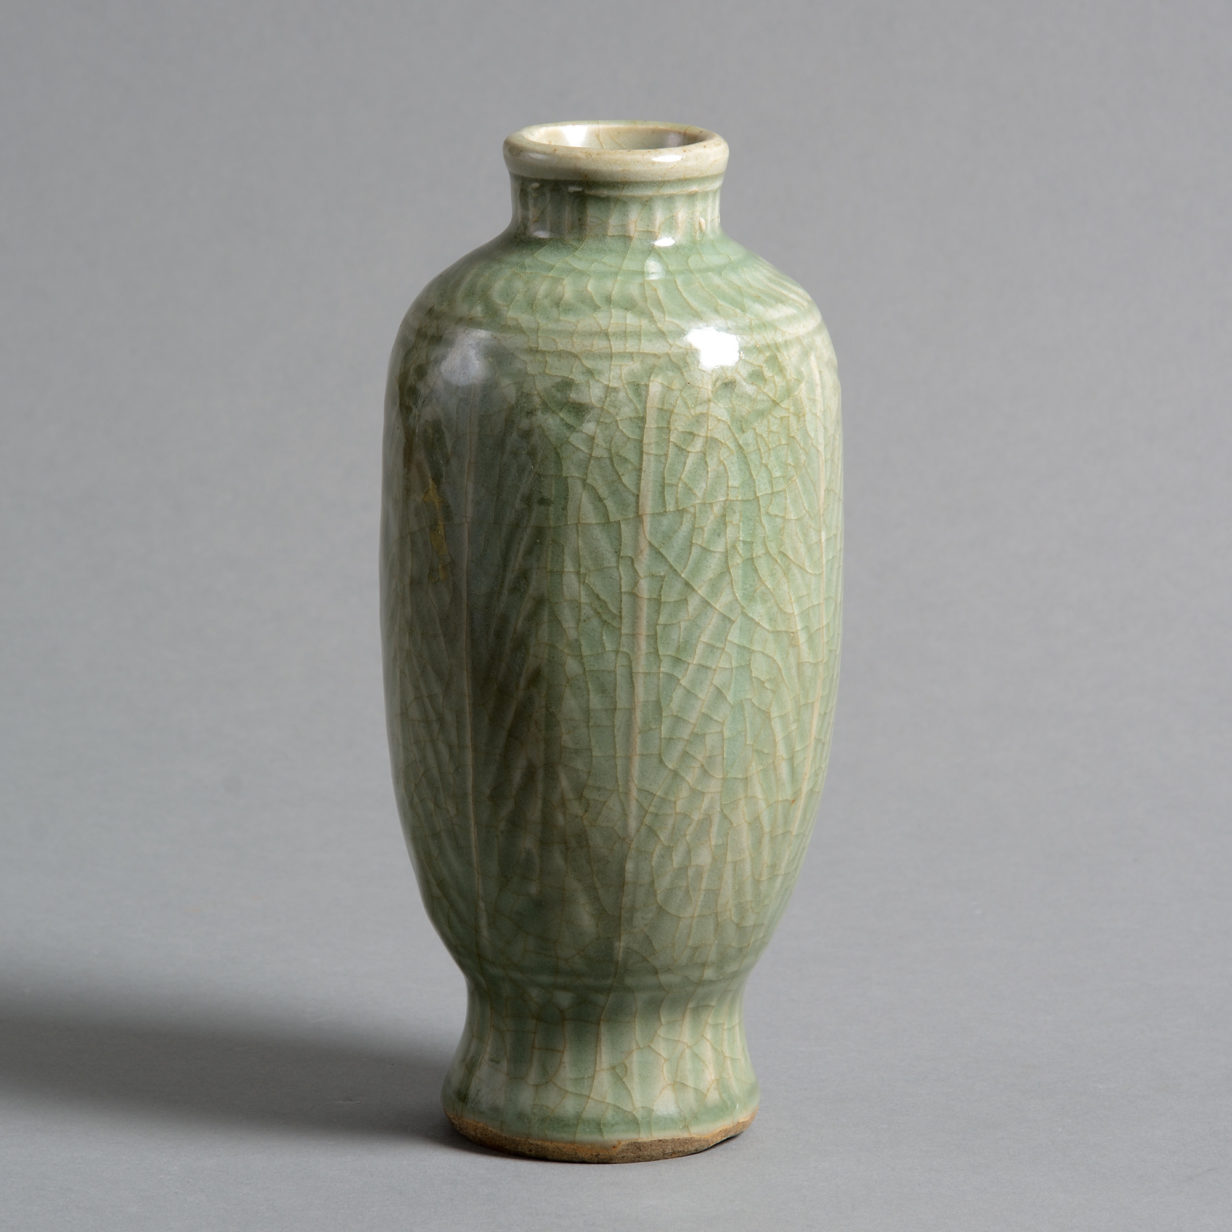 A 16th century ming period celadon porcelain vase